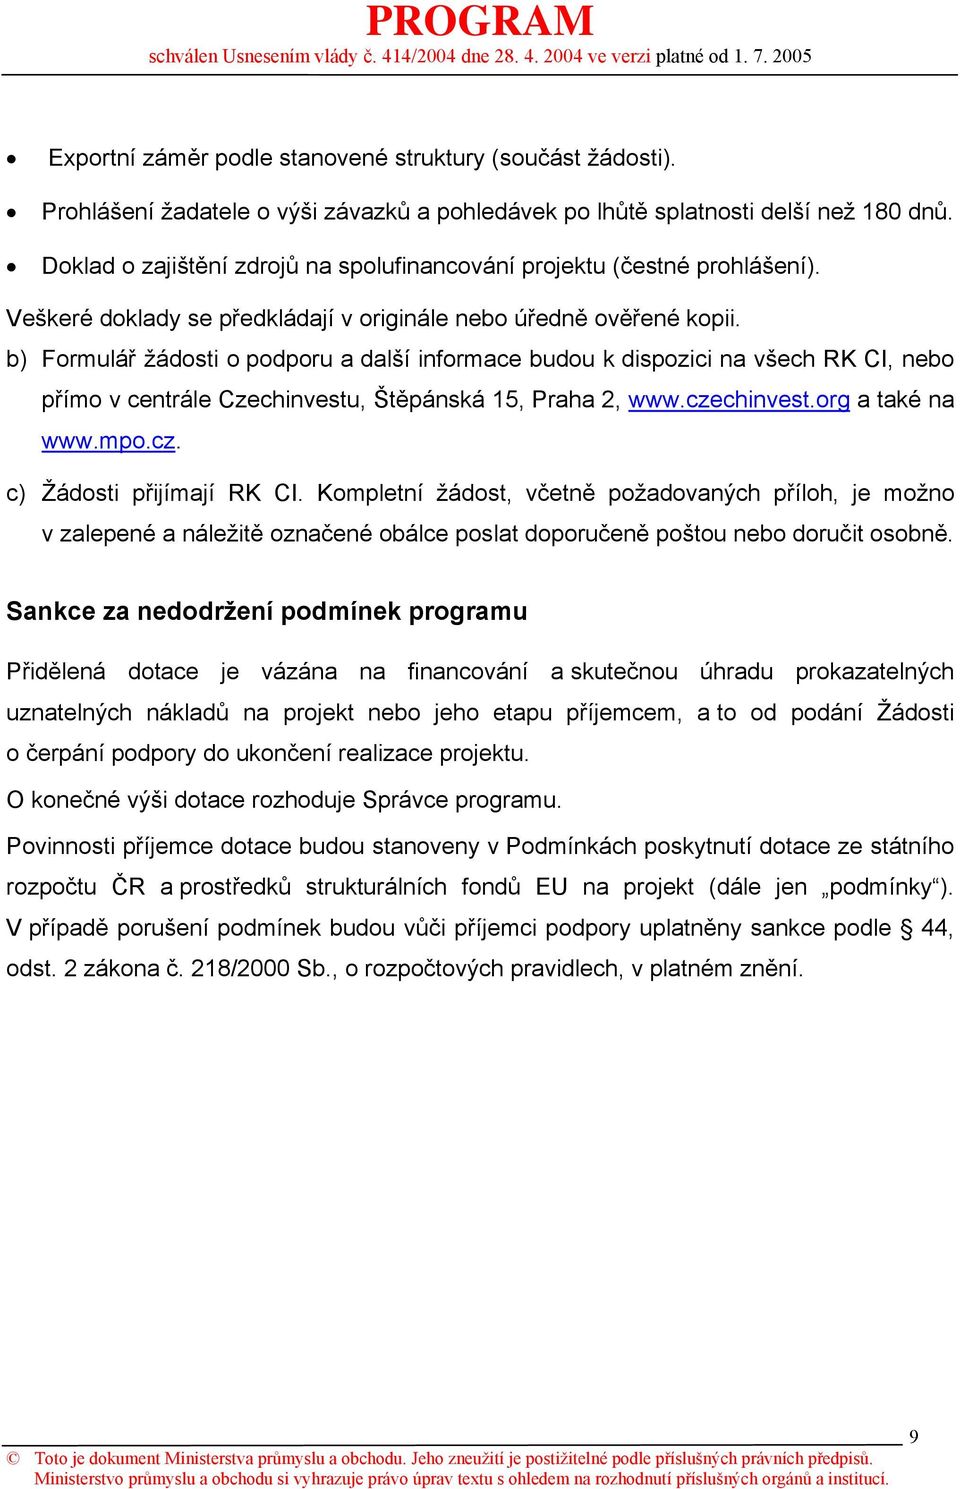 b) Formulář žádosti o podporu a další informace budou k dispozici na všech RK CI, nebo přímo v centrále Czechinvestu, Štěpánská 15, Praha 2, www.czechinvest.org a také na www.mpo.cz. c) Žádosti přijímají RK CI.